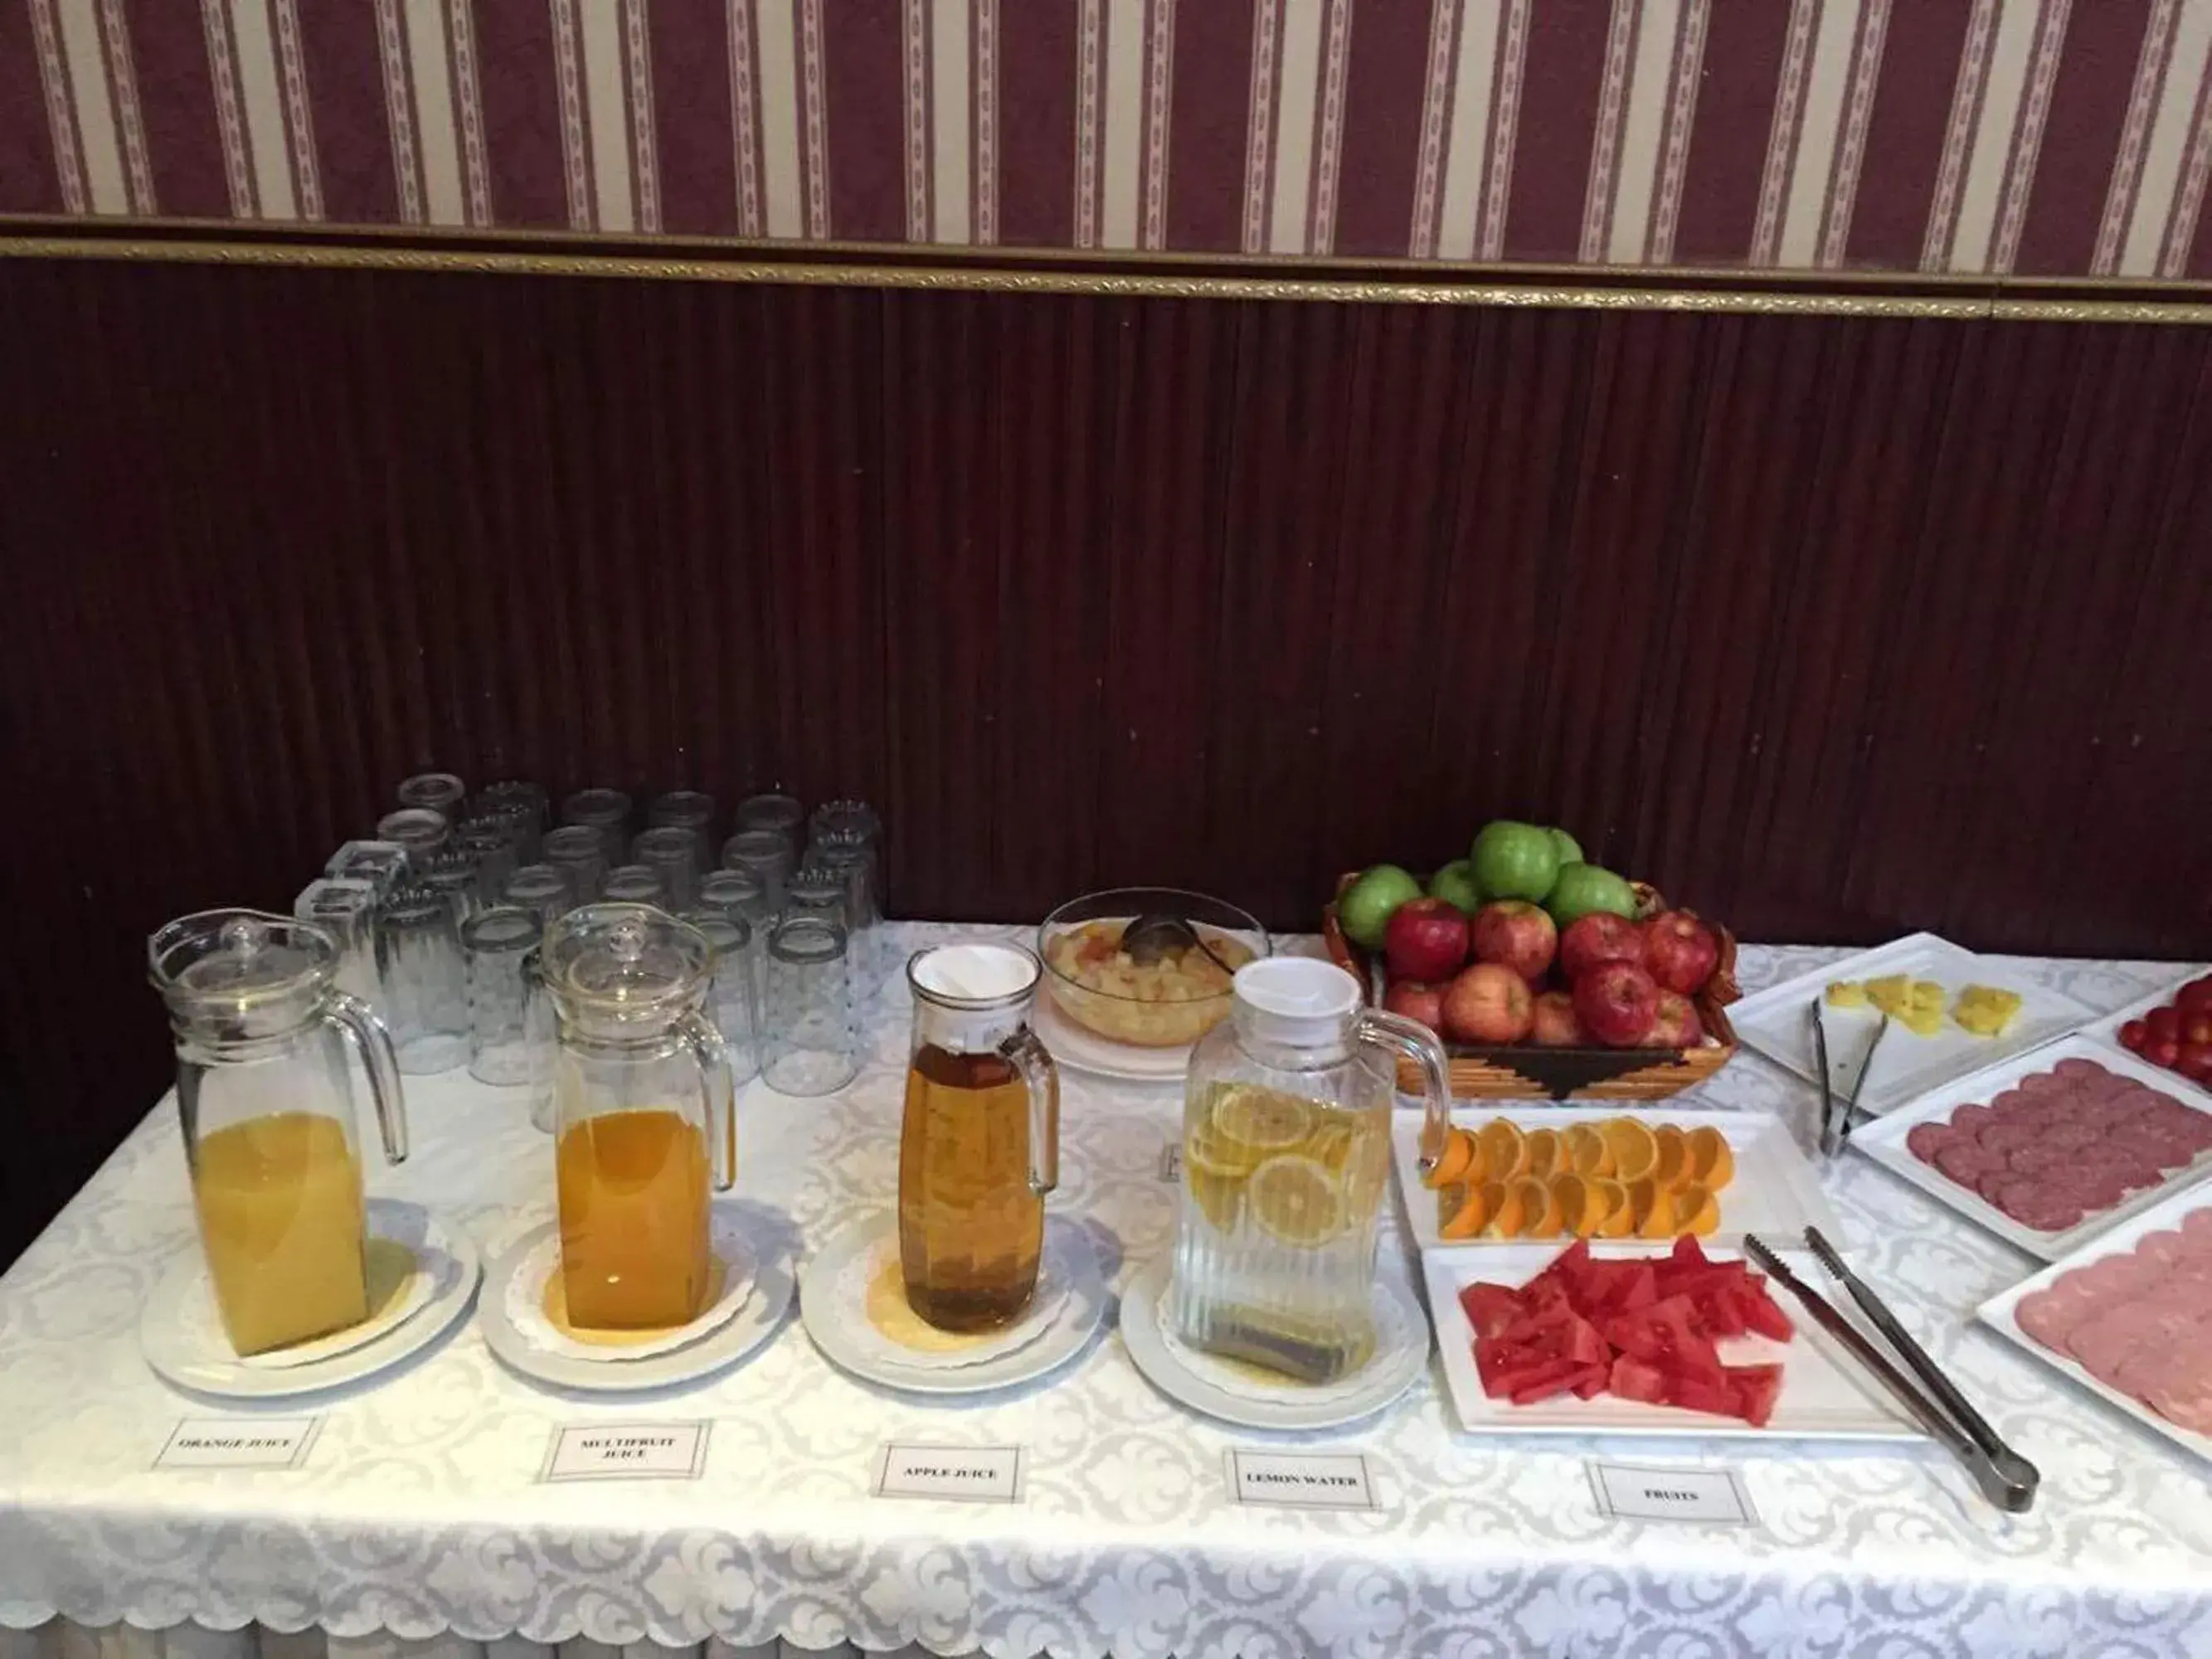 Buffet breakfast in Springs Hotel